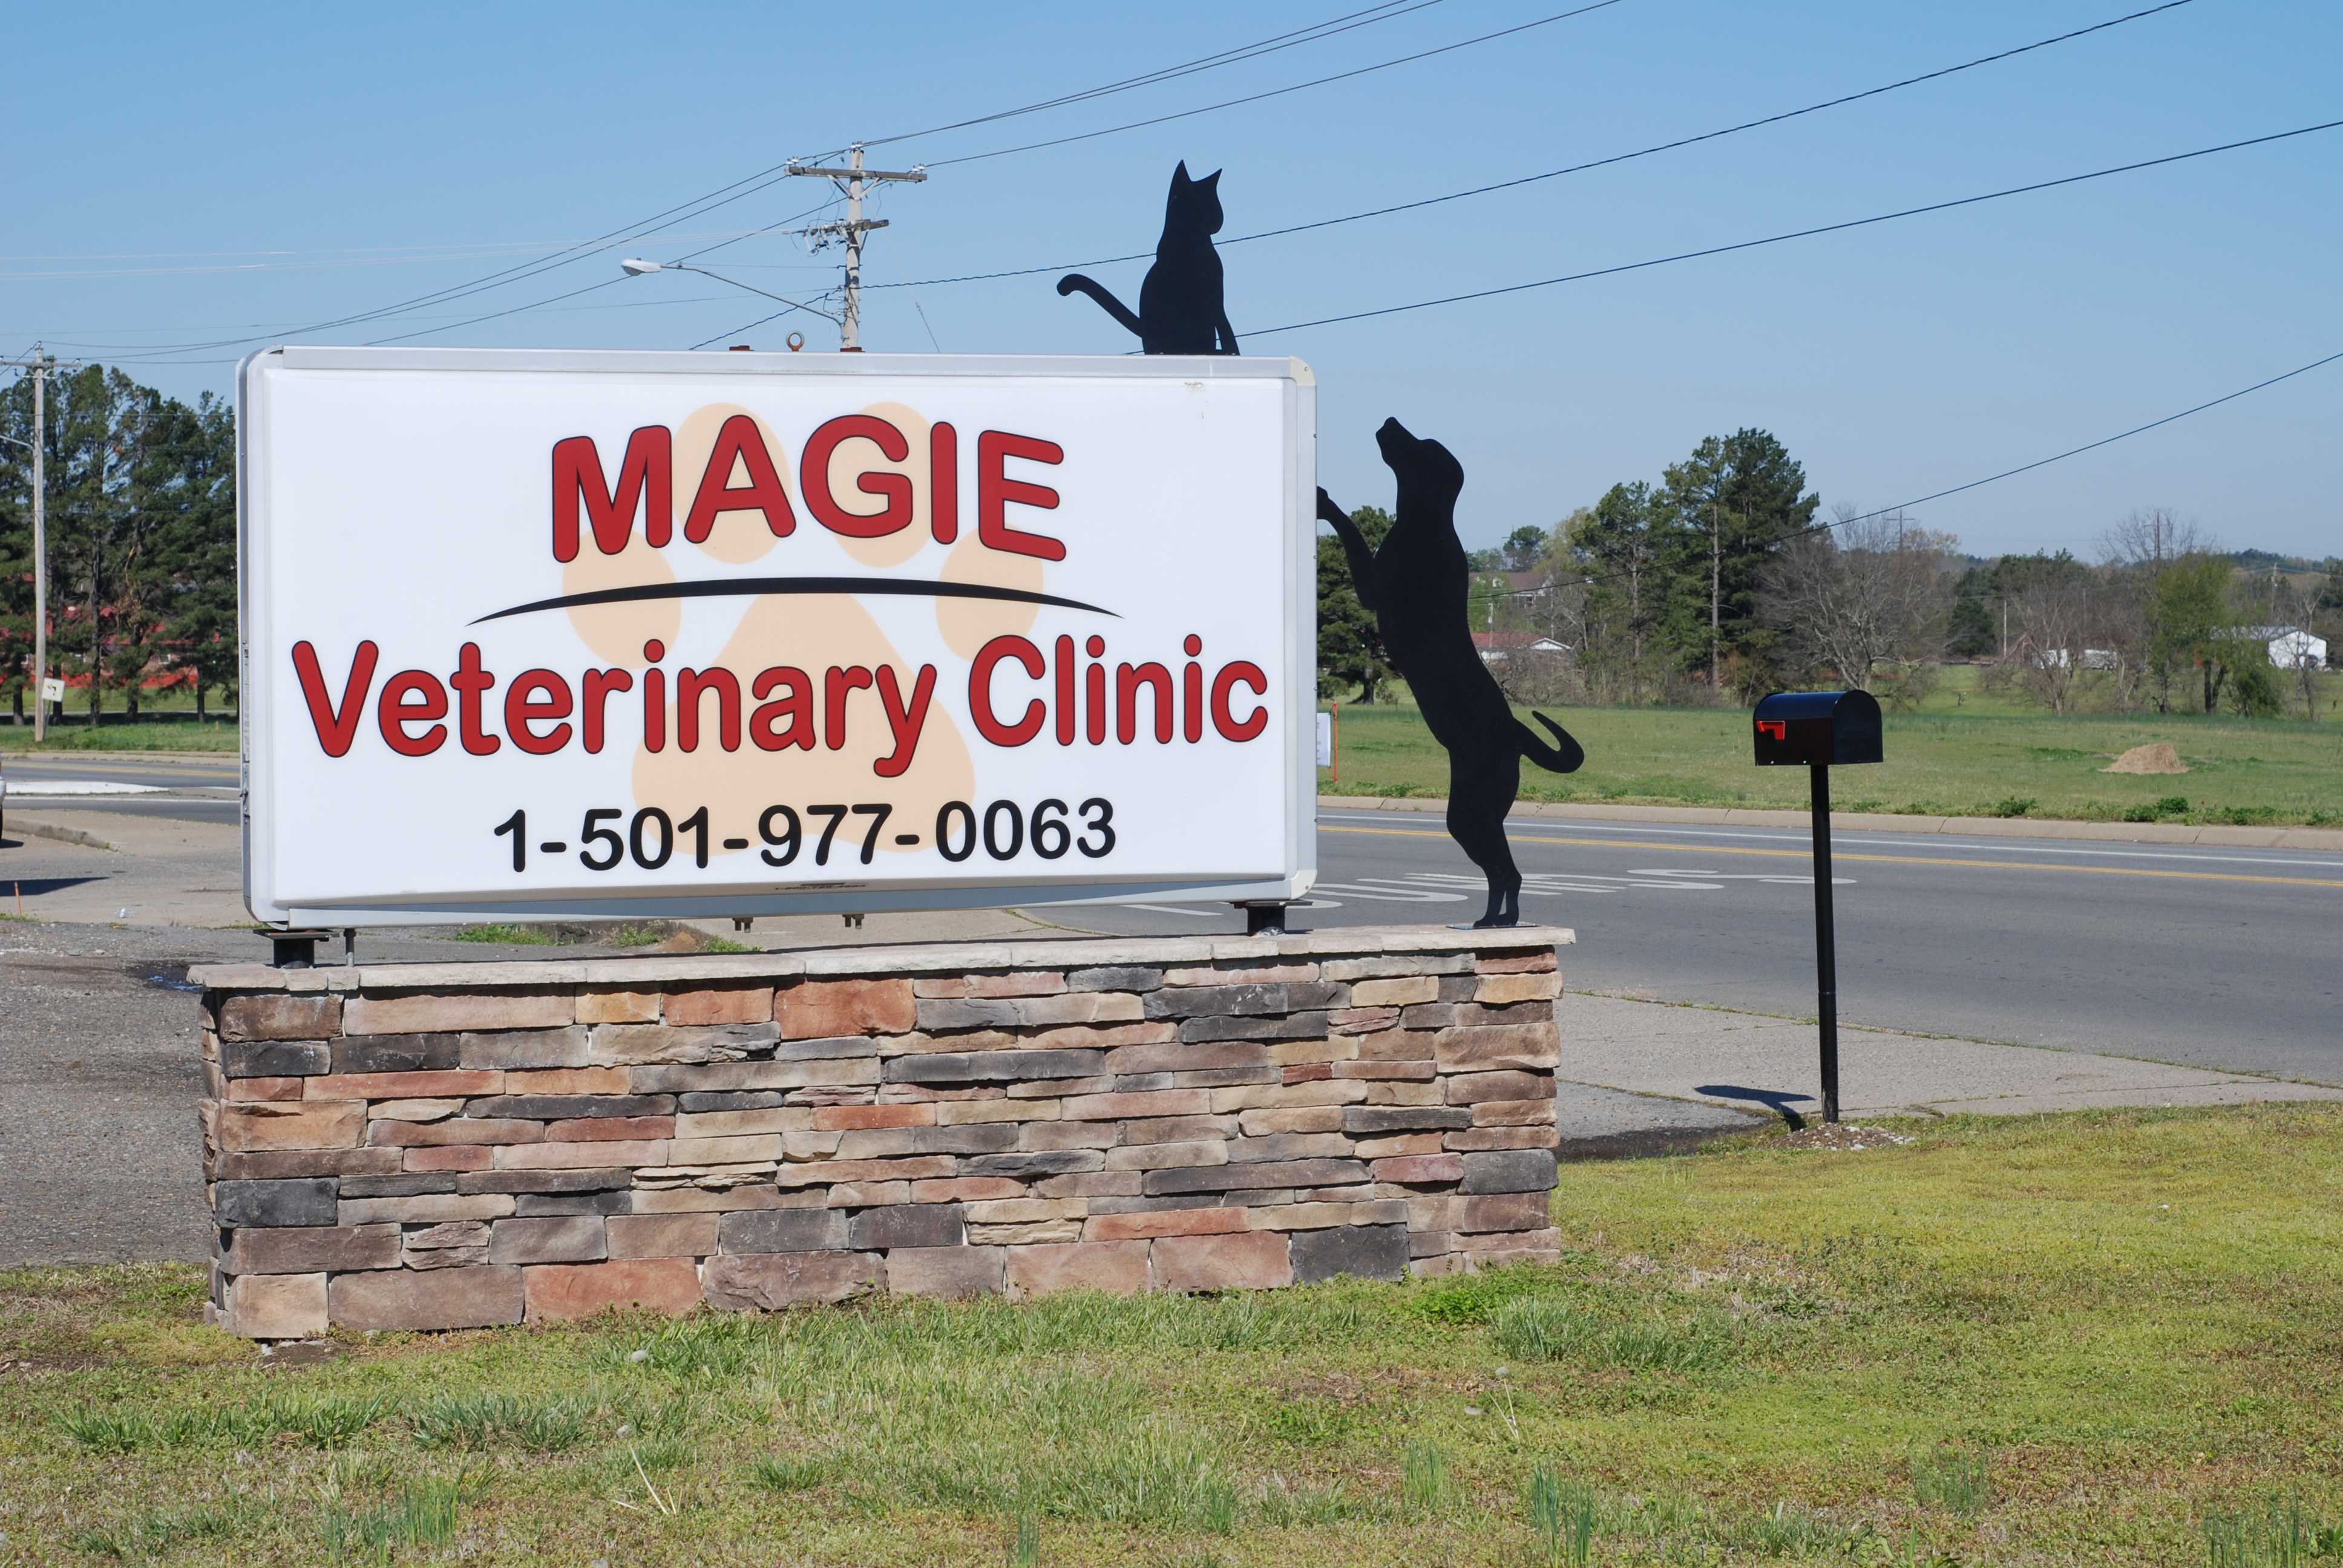 Chris Magie, Dr Magie, magie vet clinic, morrilton, arkansas, morrilton vet clinic, vet, morrilton veterinary clinic, arkansas veterinary clinic, low cost veterinary clinic, veterinary animal clinic